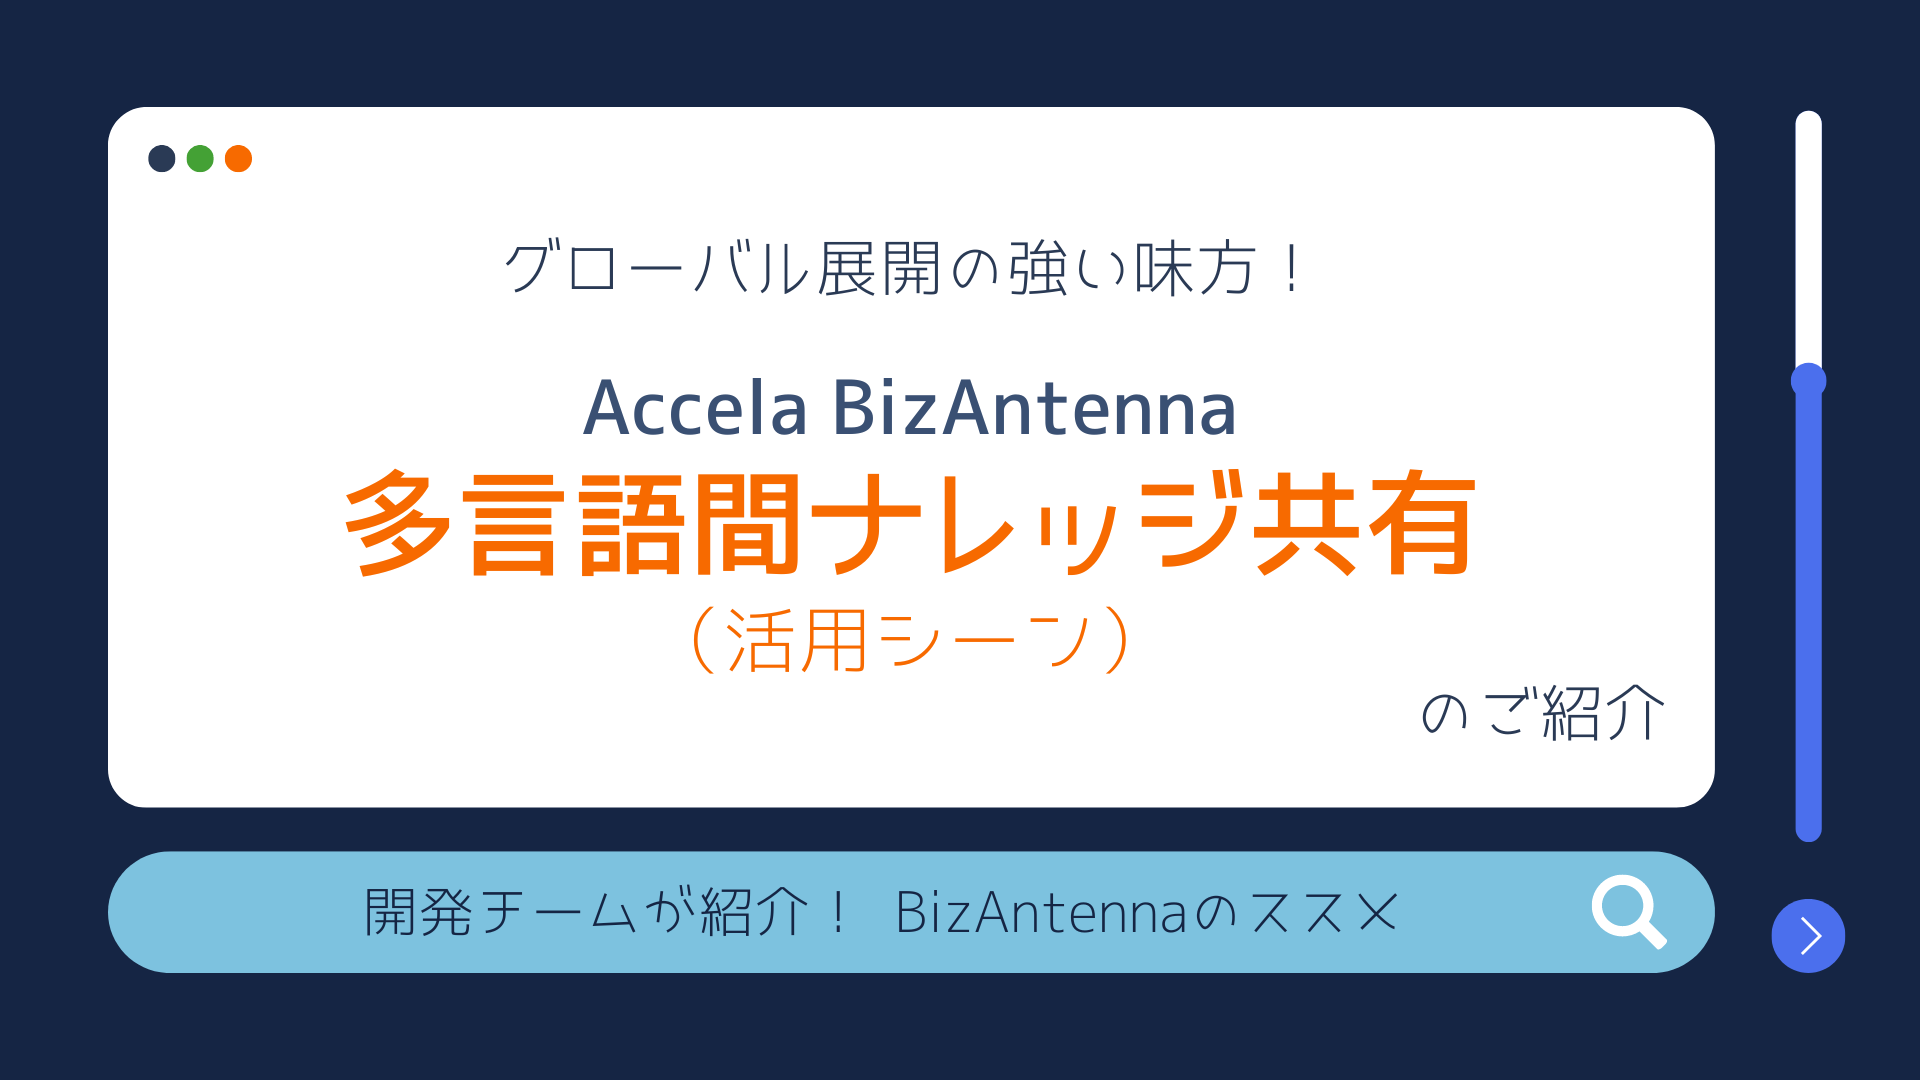 グローバル展開の強い味方「Accela BizAntenna 多言語間ナレッジ共有」活用シーンのご紹介